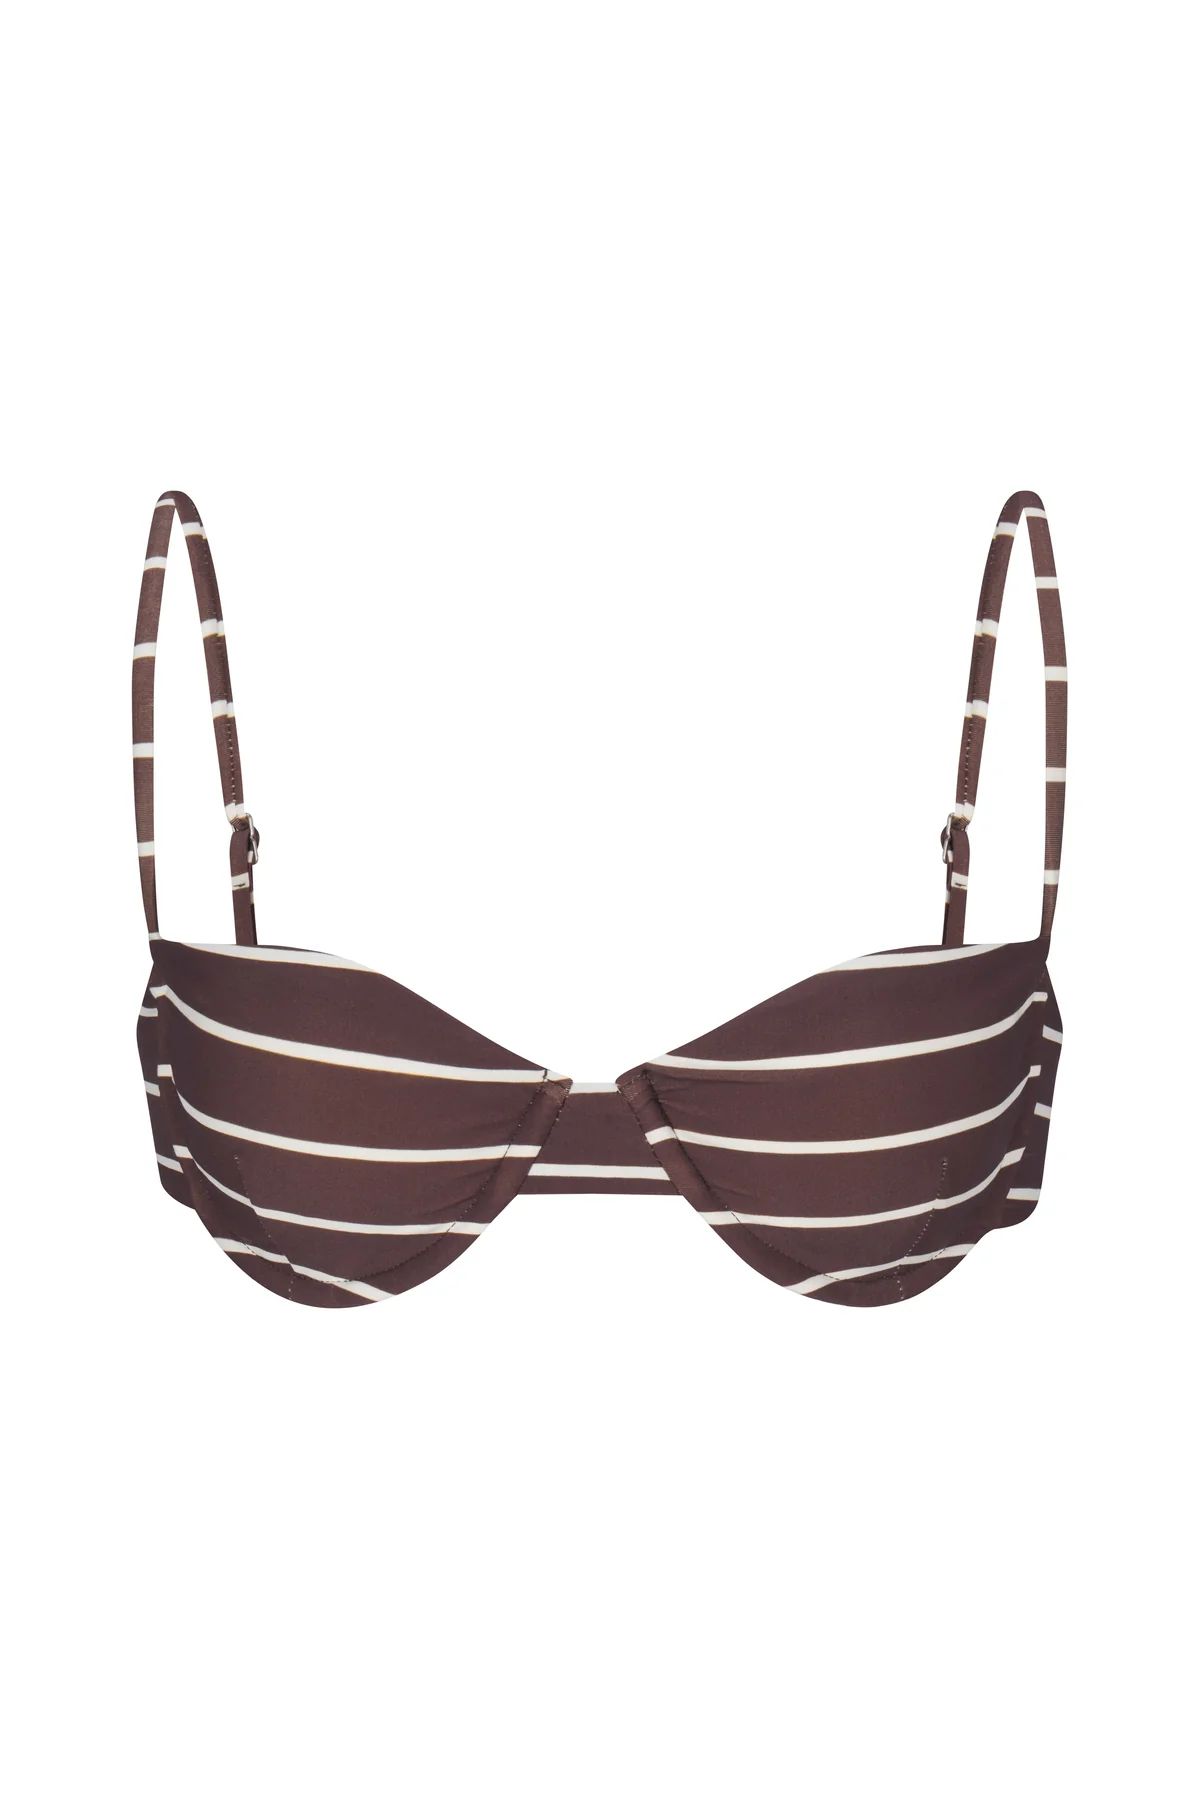 The Balconette Underwire Bikini Top in Espresso Odd Stripes | Over The Moon